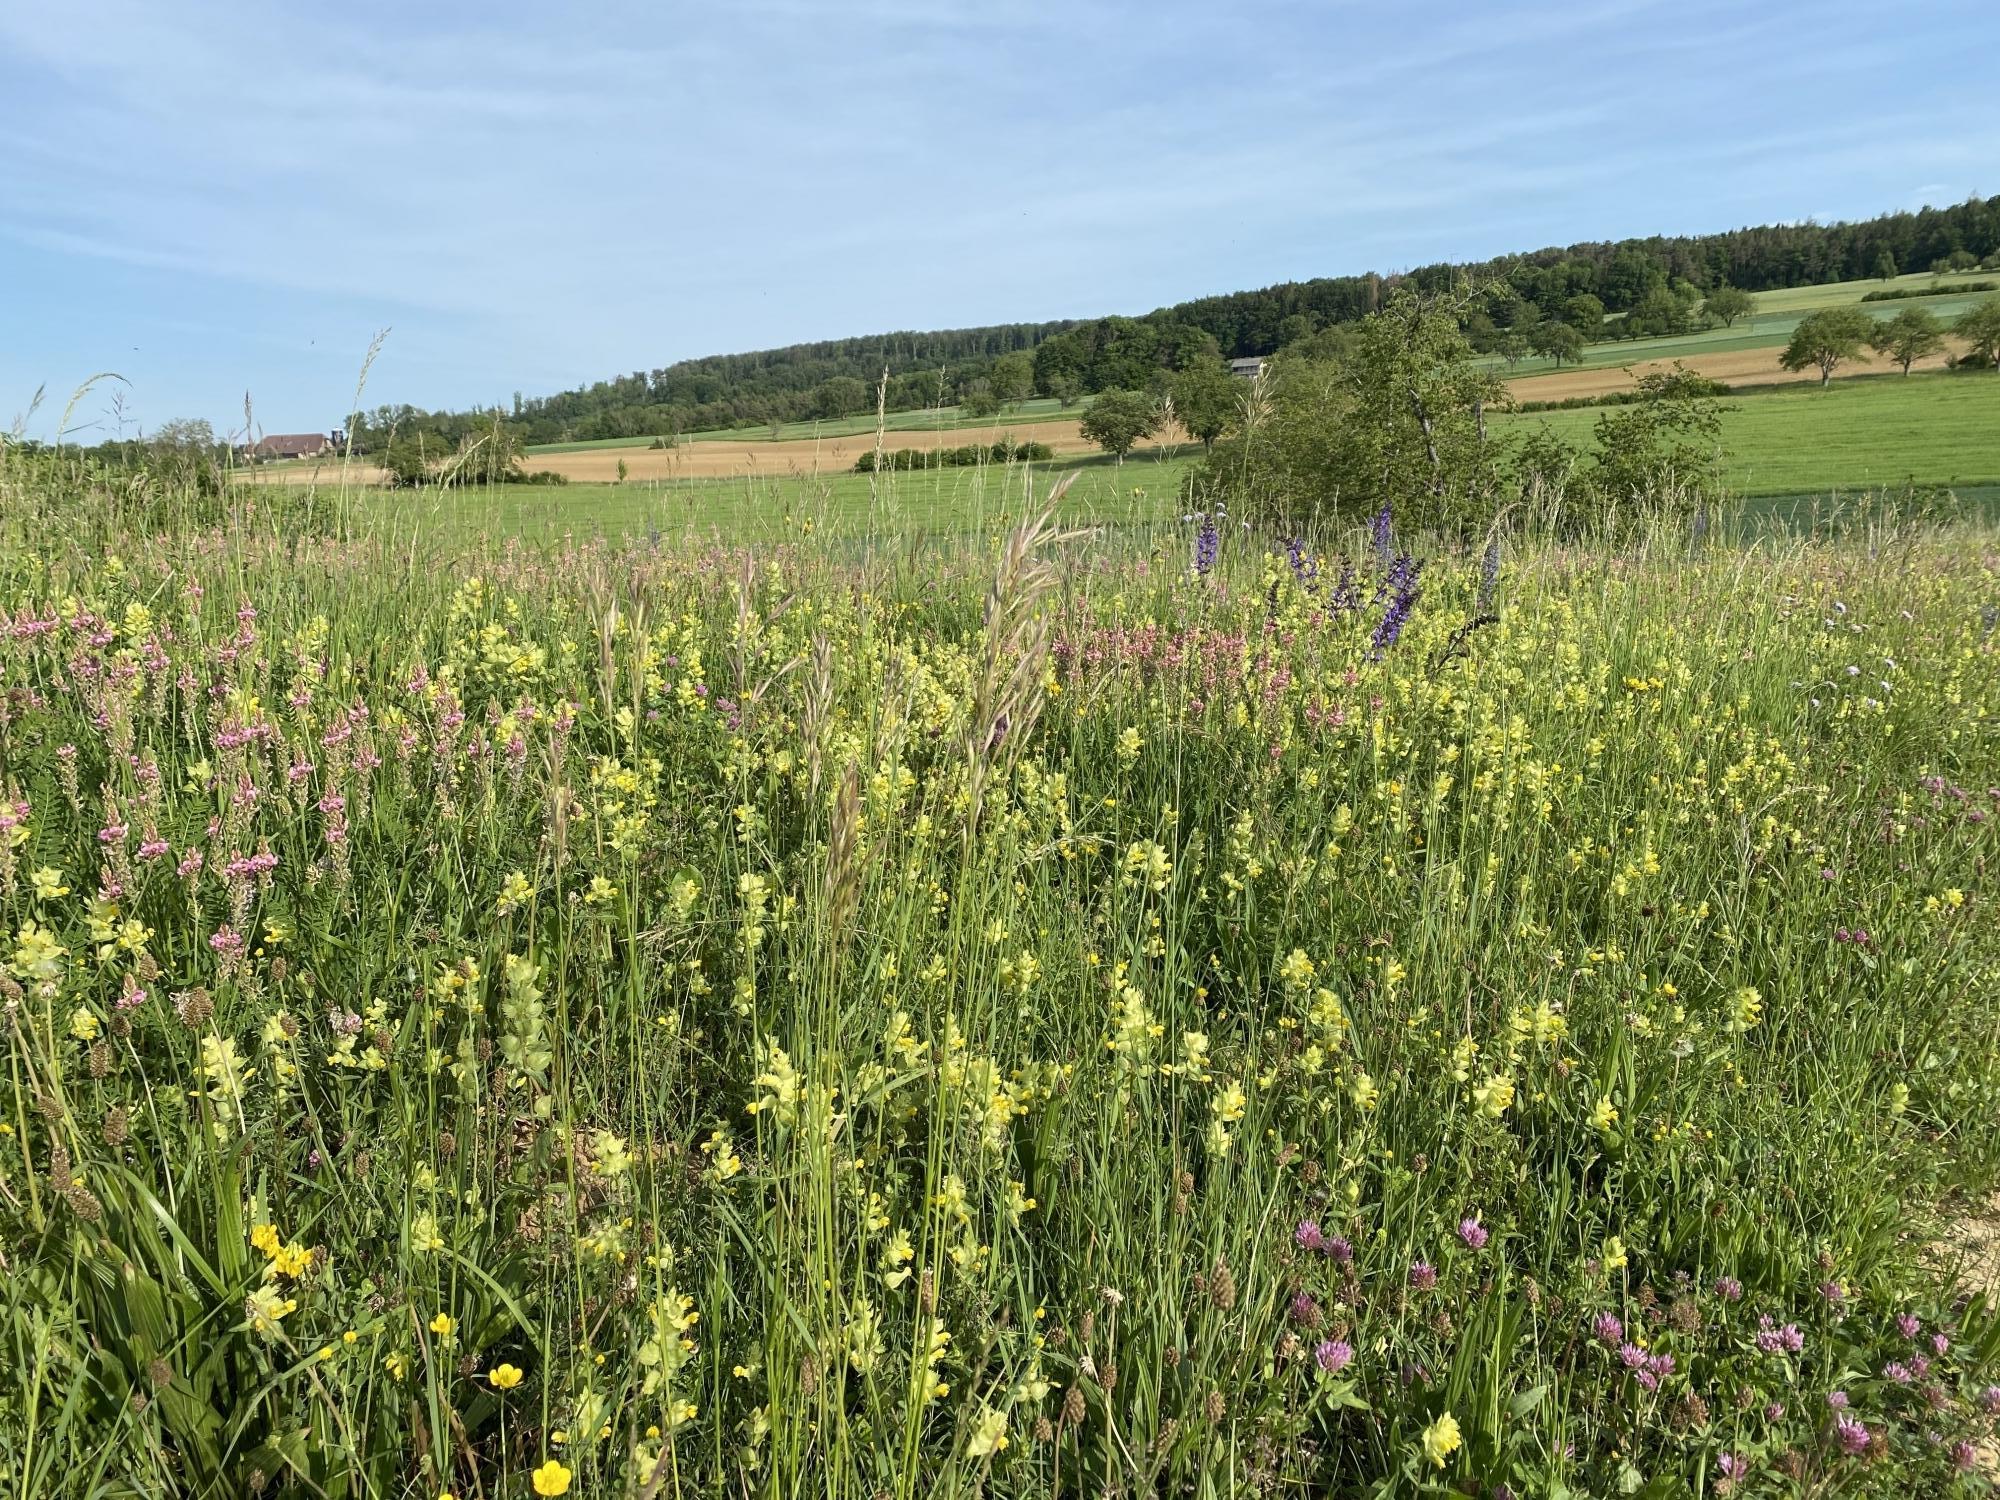 Lorsque l'on se promène en bordure de champs et de vignes, il est possible d'observer plusieurs aménagements mis en place pour promouvoir la biodiversité.